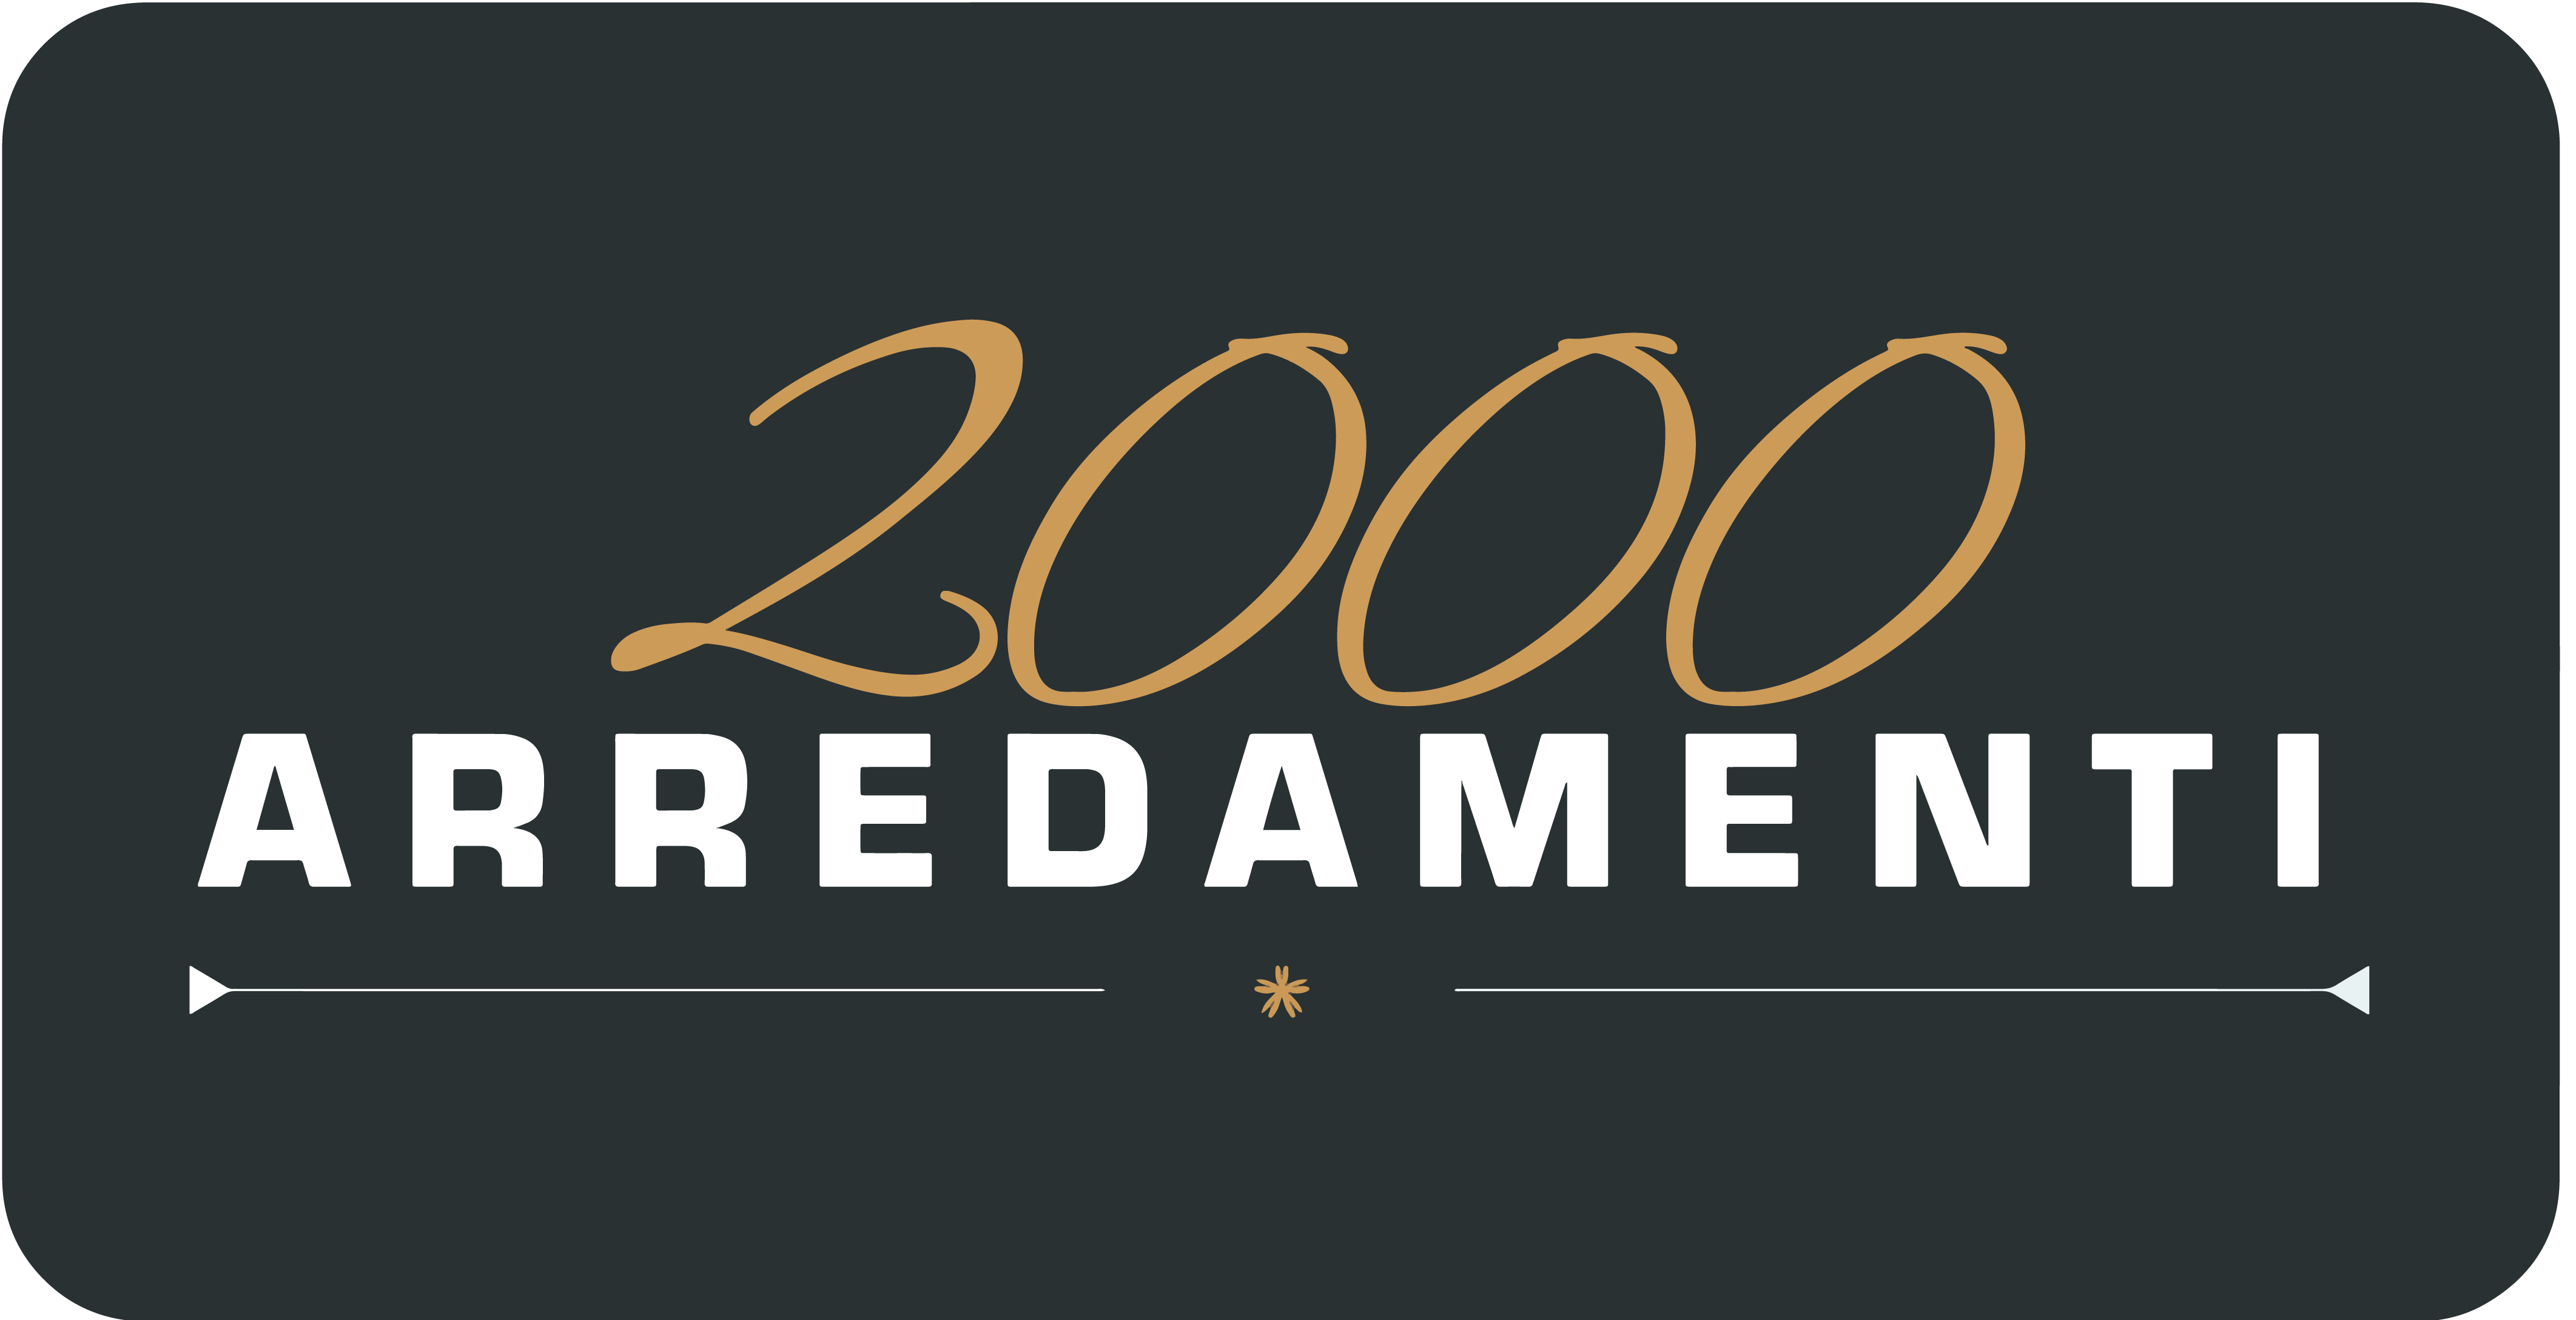 2000 Arredamenti